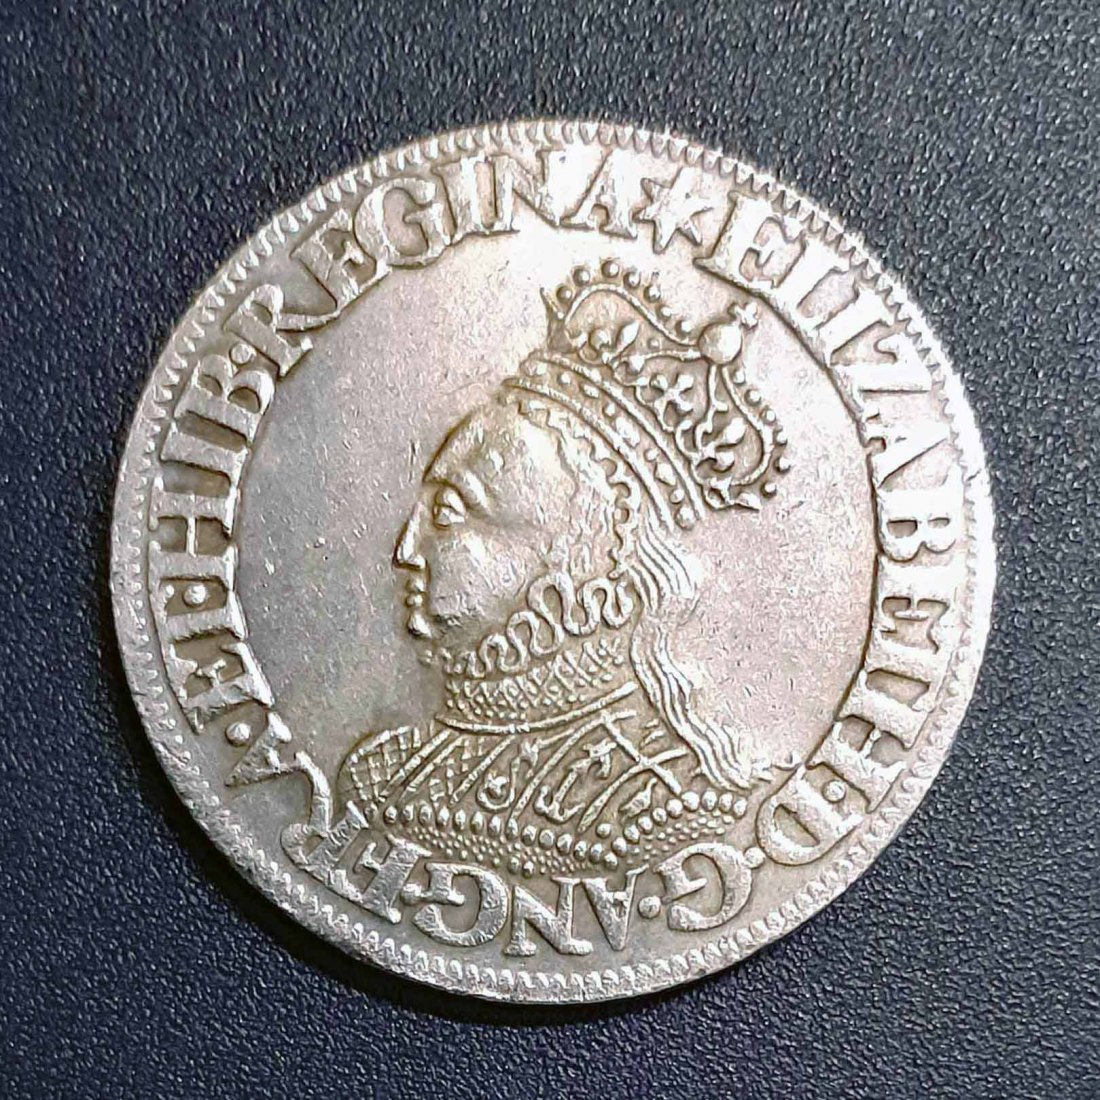  049. Nachprägung Schilling 1560 - 1561 England Elisabeth I.   